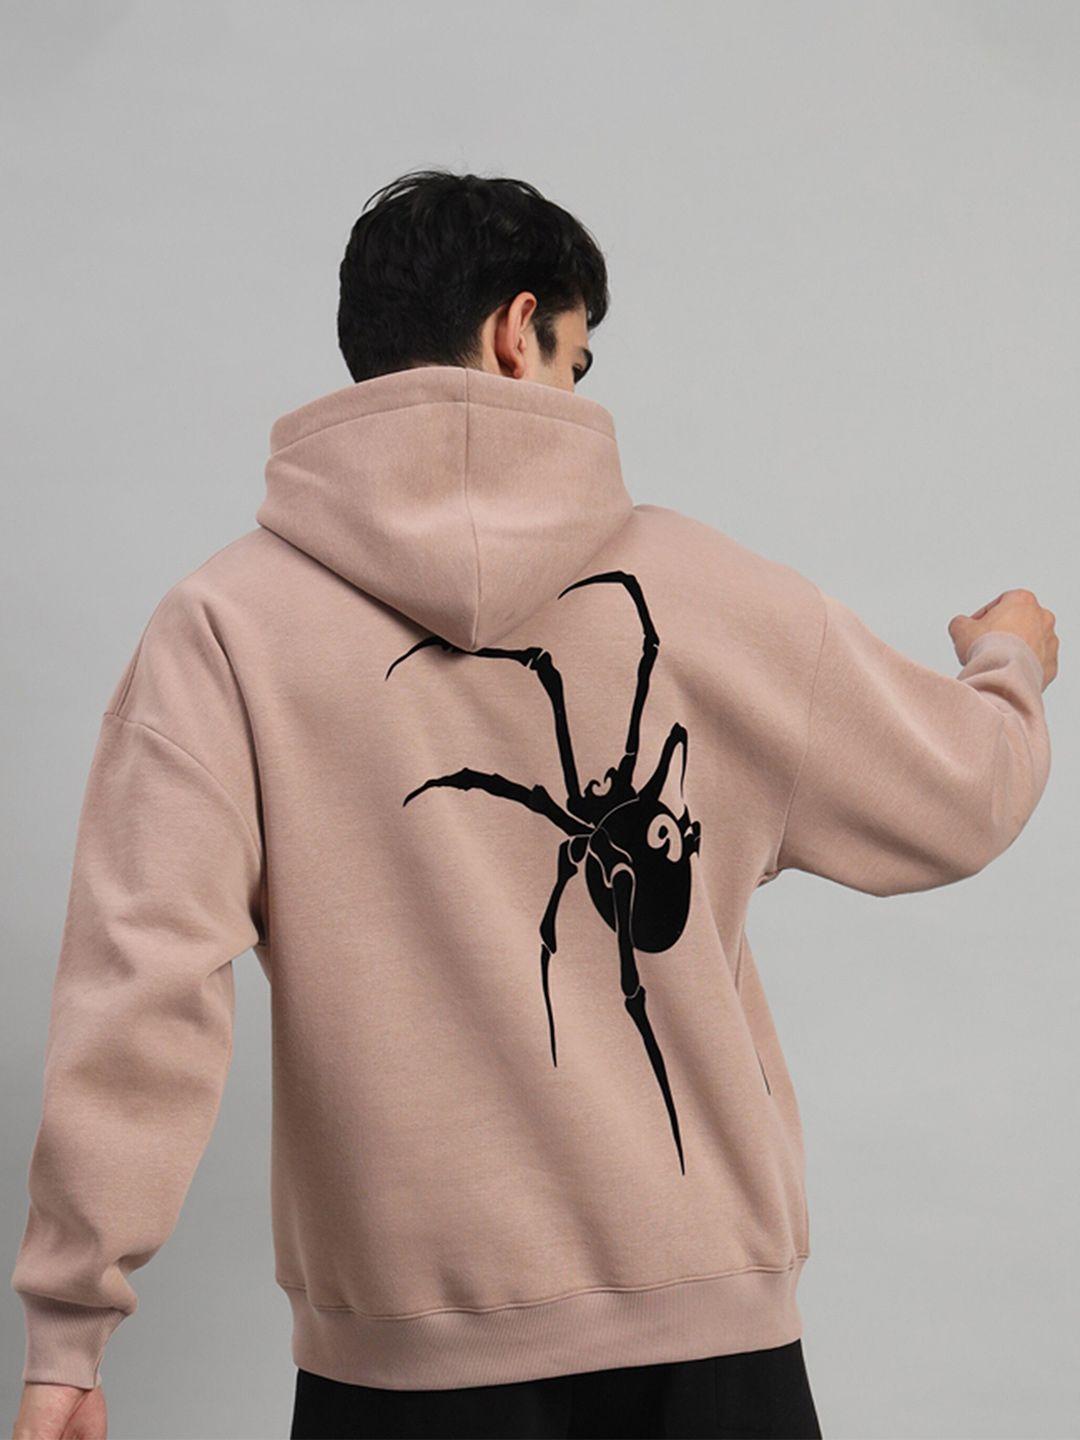 griffel-graphic-printed-hooded-fleece-sweatshirt